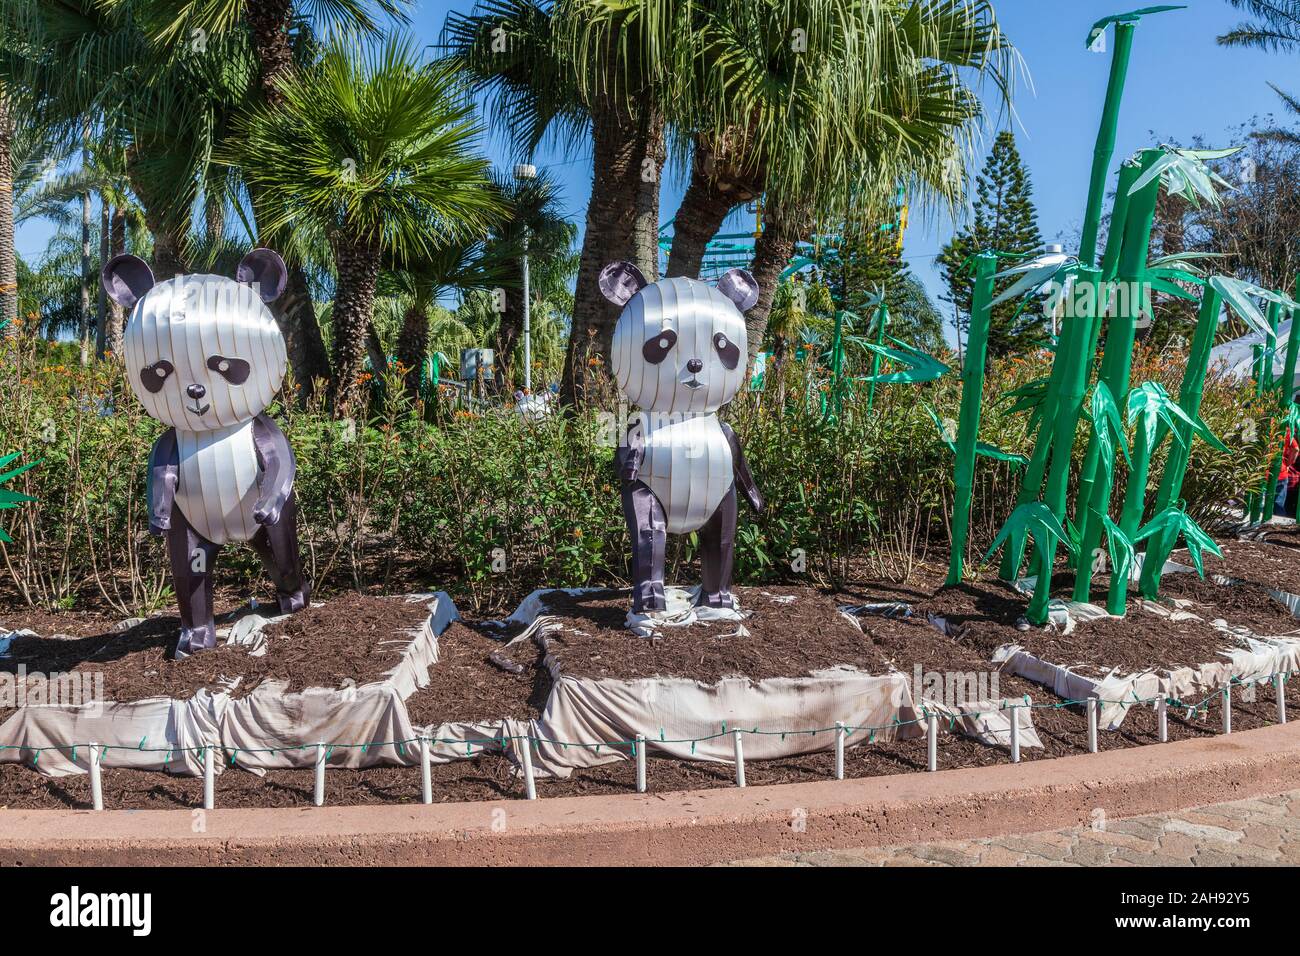 Moody Gardens Panda Sculpture garden, Galveston, Texas. Stock Photo